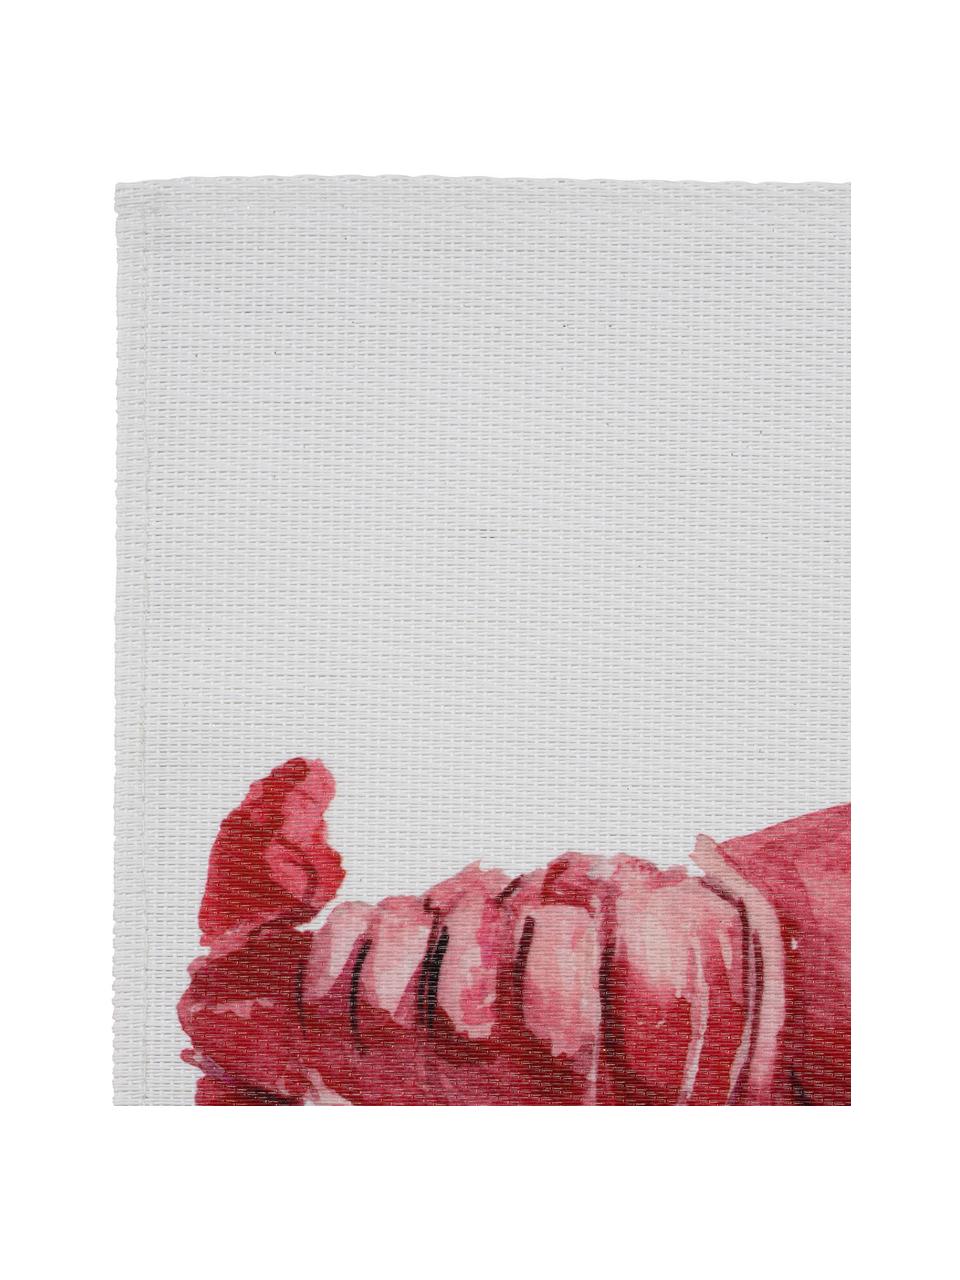 Tovaglietta con motivo aragosta Ocean, Poliestere, Bianco, rosso, Larg. 30 x Lung. 45 cm